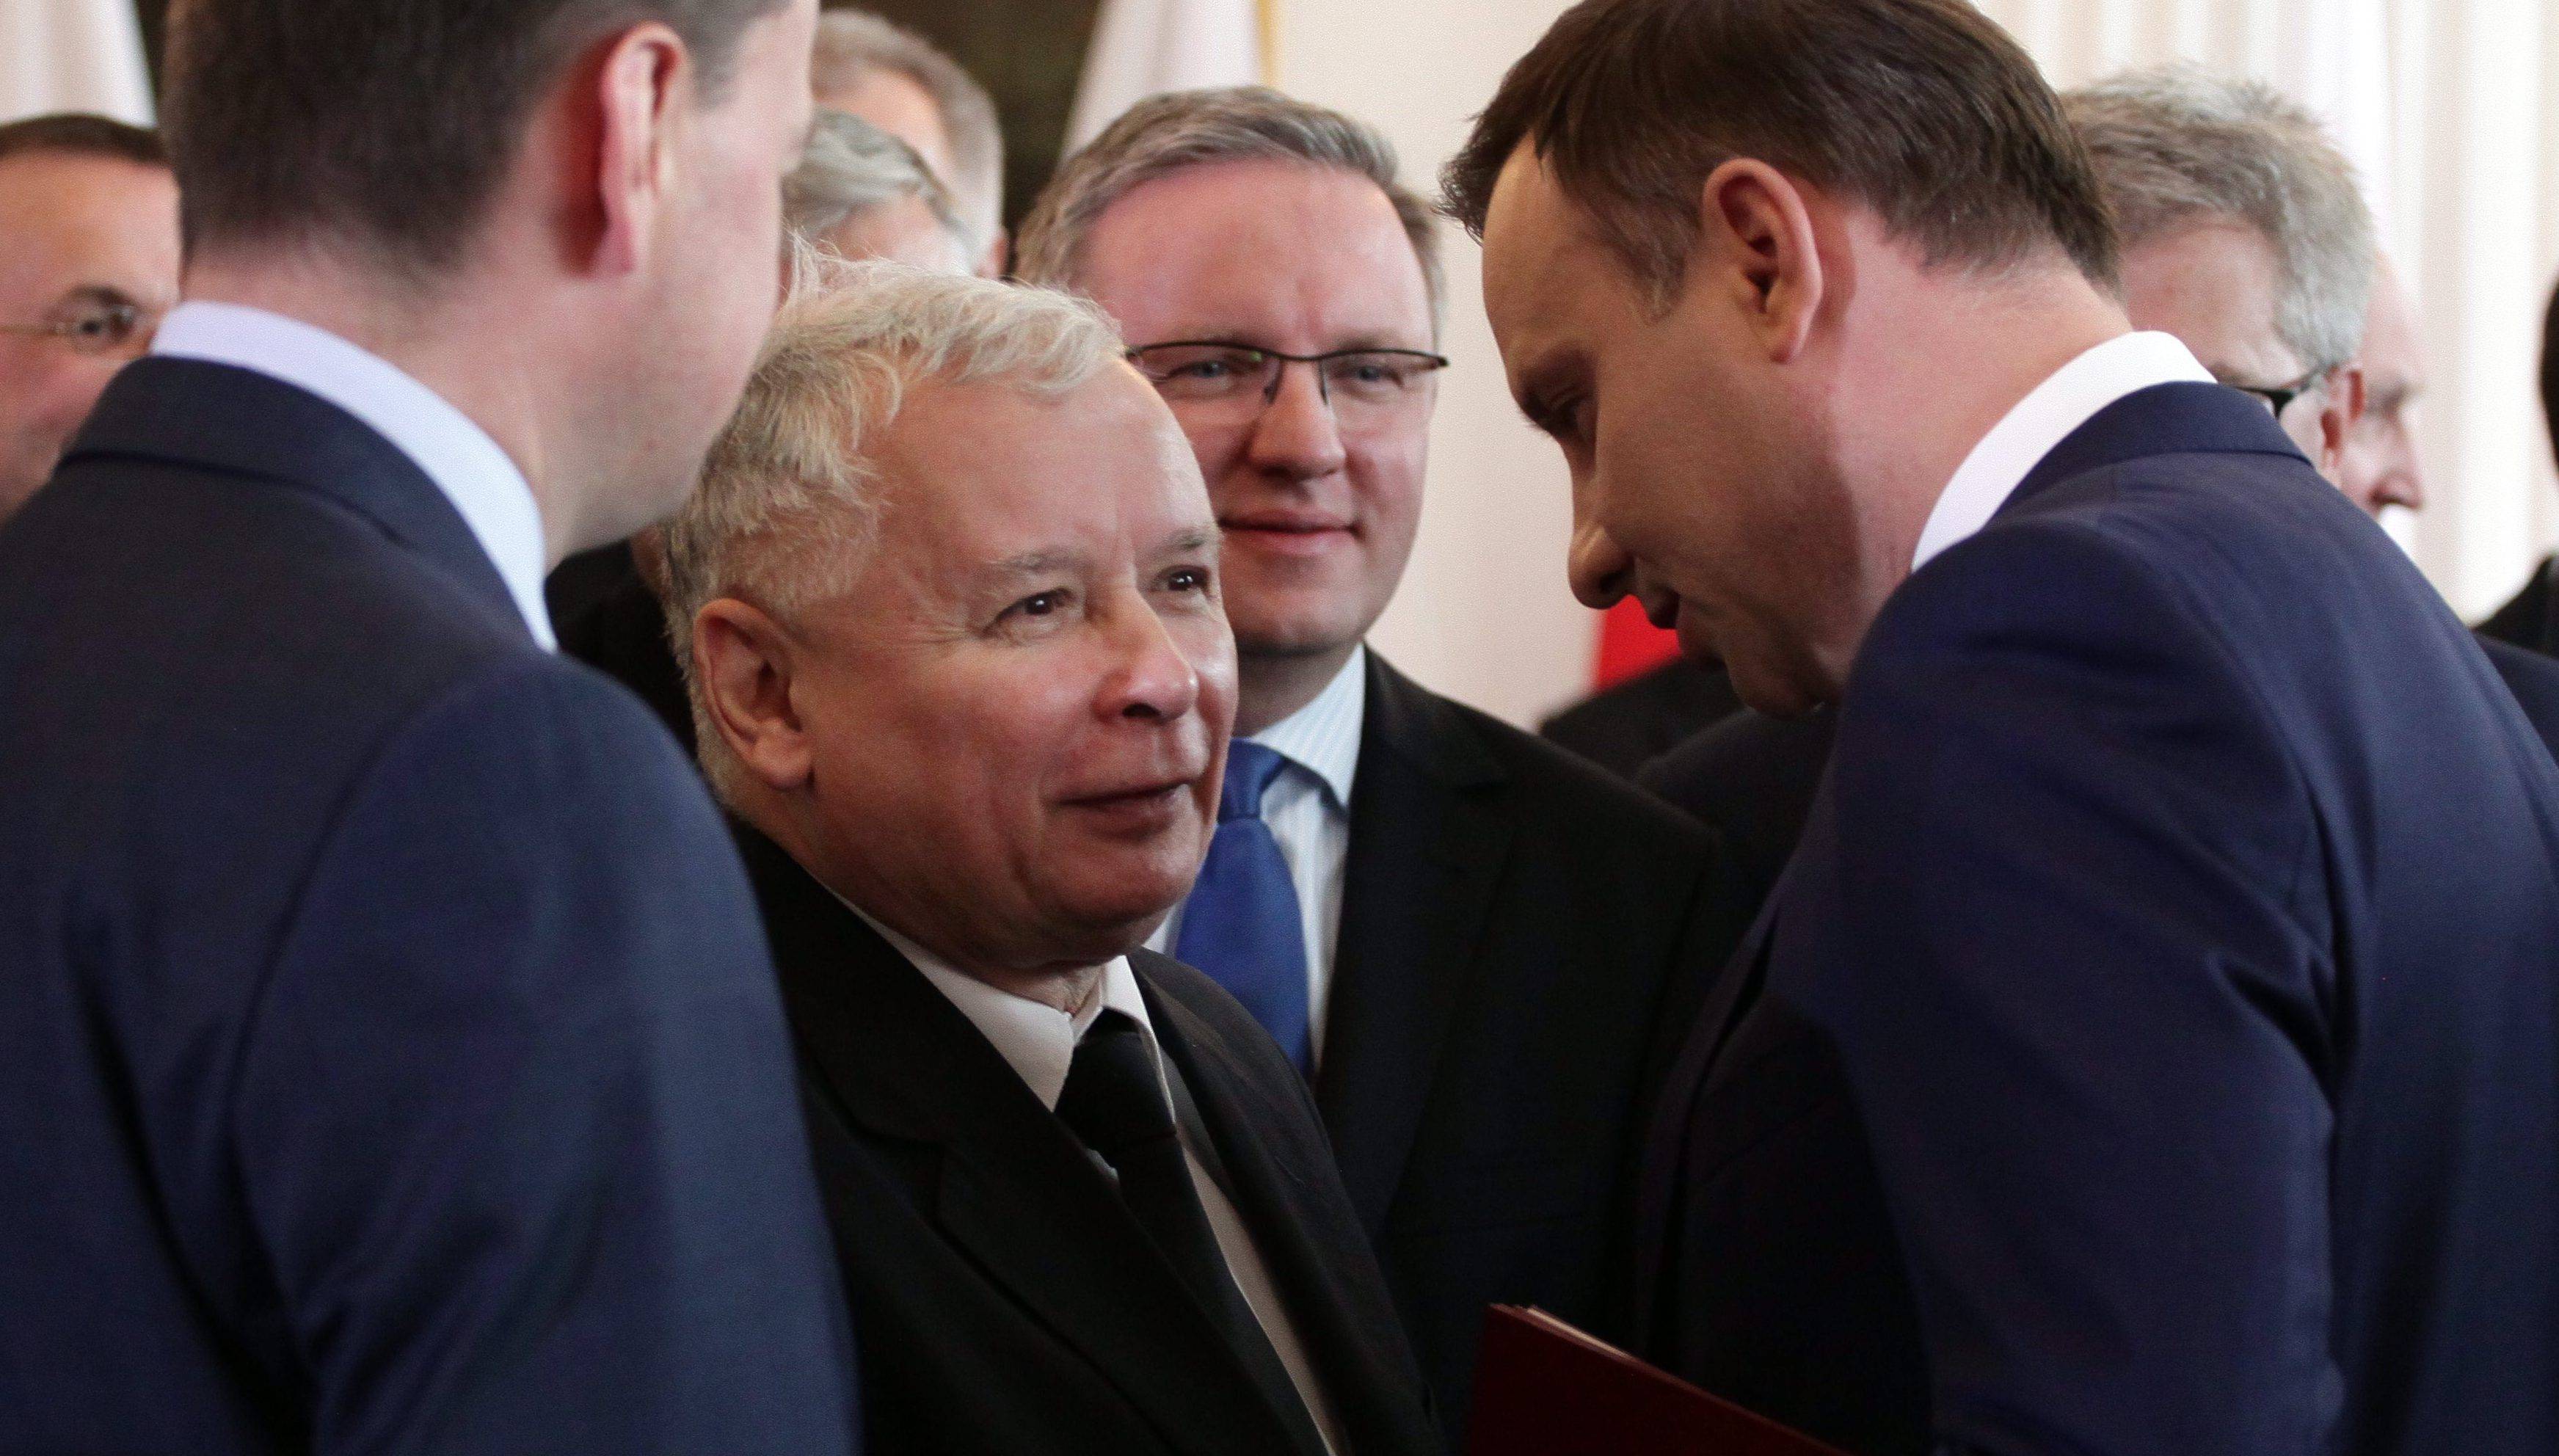 Grafika do artykułu SKÓRZYŃSKI COFA CZAS. Duda do Kaczyńskiego: jest pan wielkim człowiekiem. Politycy PiS: będziemy szanować opozycję. Kronika (7-13 listopada 2015)